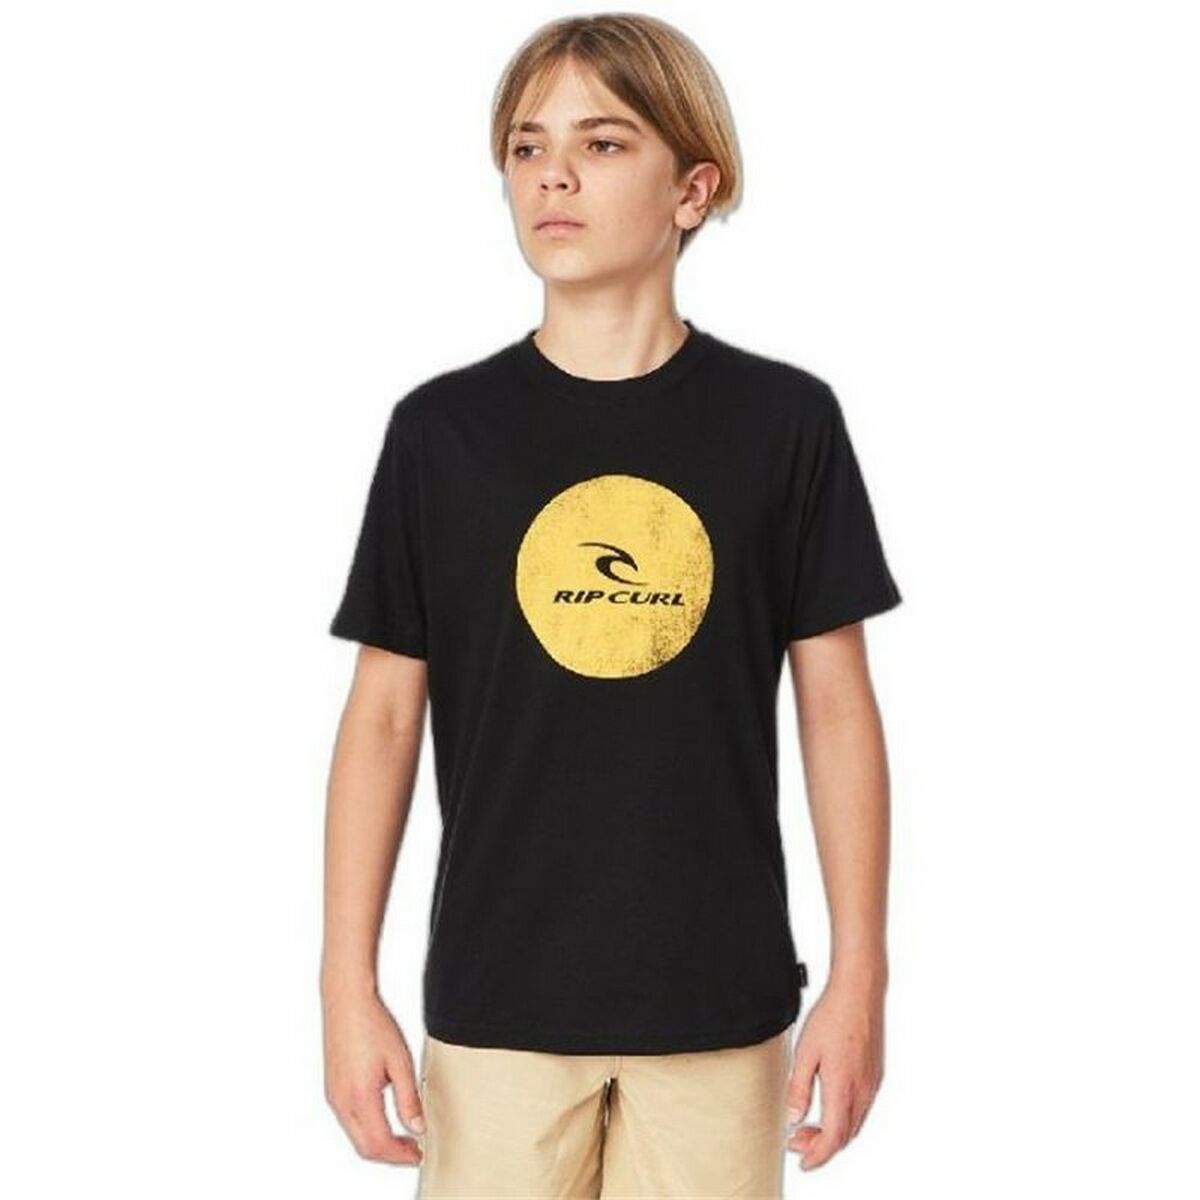 Osta tuote Lasten Lyhythihainen paita Rip Curl Corp Icon B Musta (Koko: 14 vuotta) verkkokaupastamme Korhone: Urheilu & Vapaa-aika 20% alennuksella koodilla VIIKONLOPPU